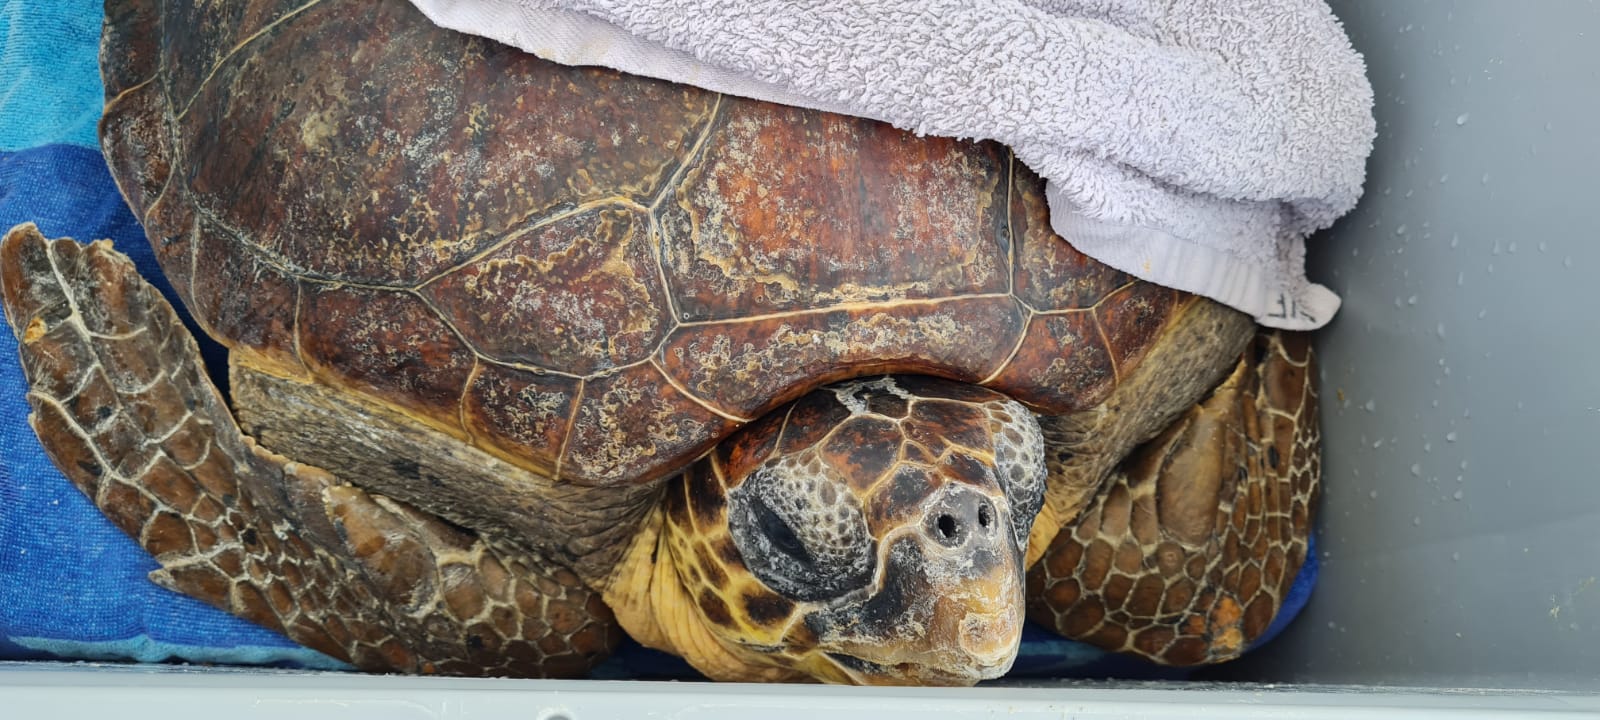 El 75% de las tortugas rescatadas en 2022 estaban atrapadas en plásticos